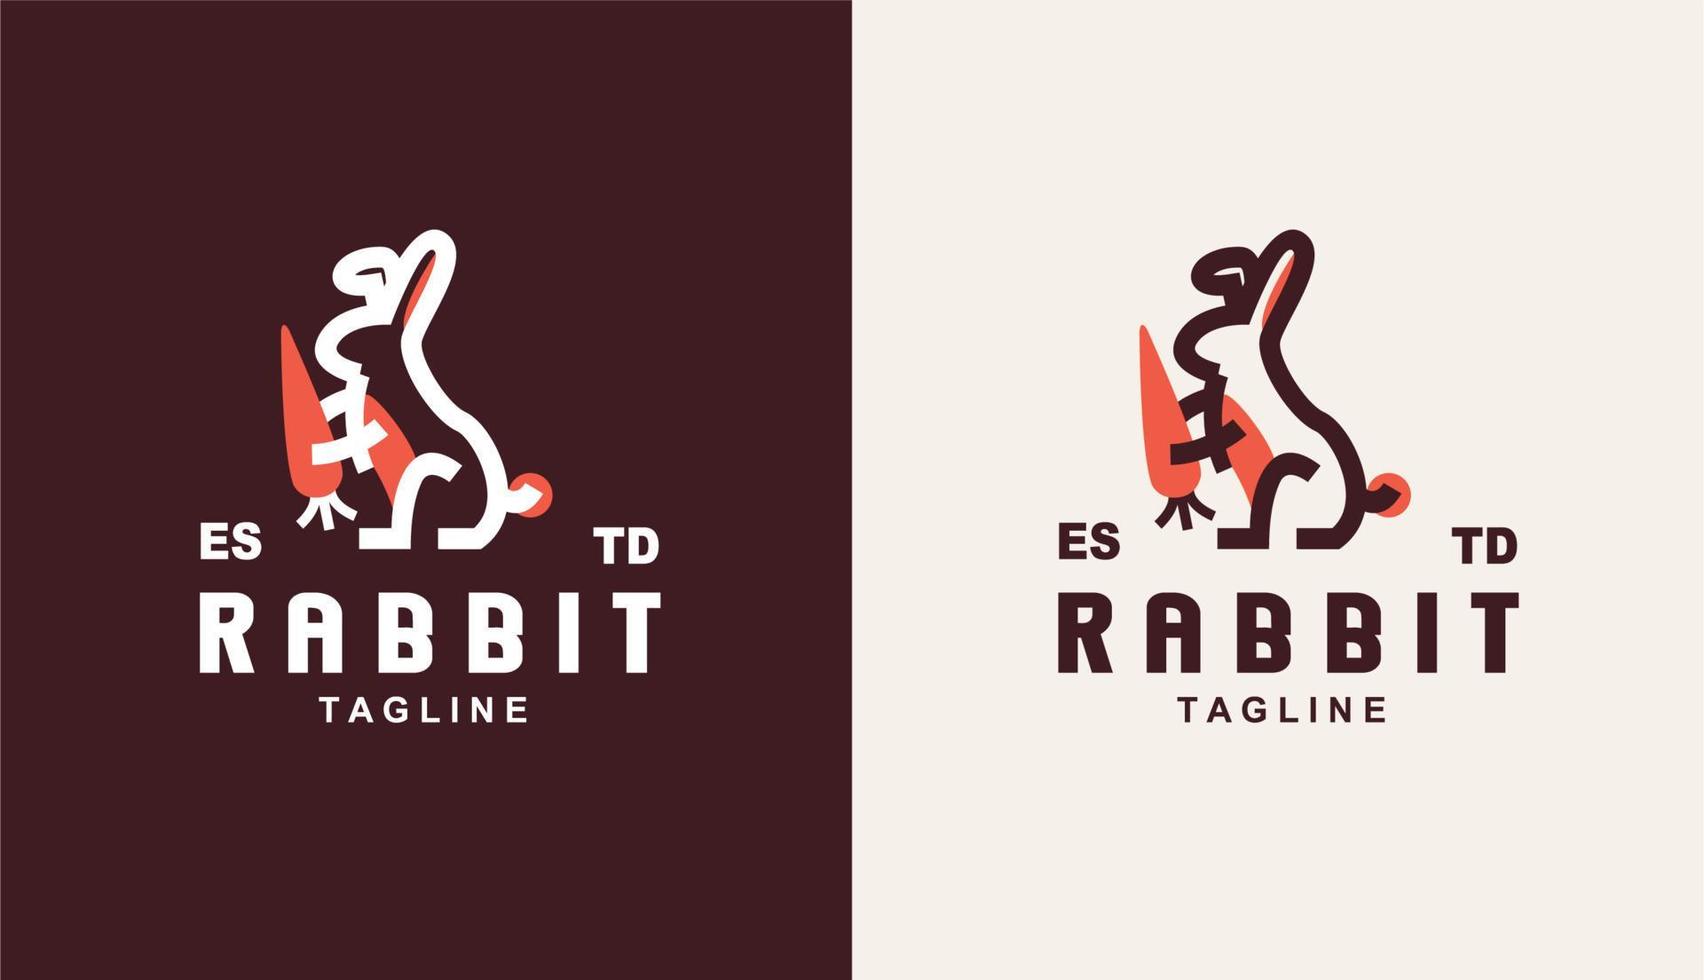 design de logotipo simples de coelho e cenoura monoline para pet shop vetor